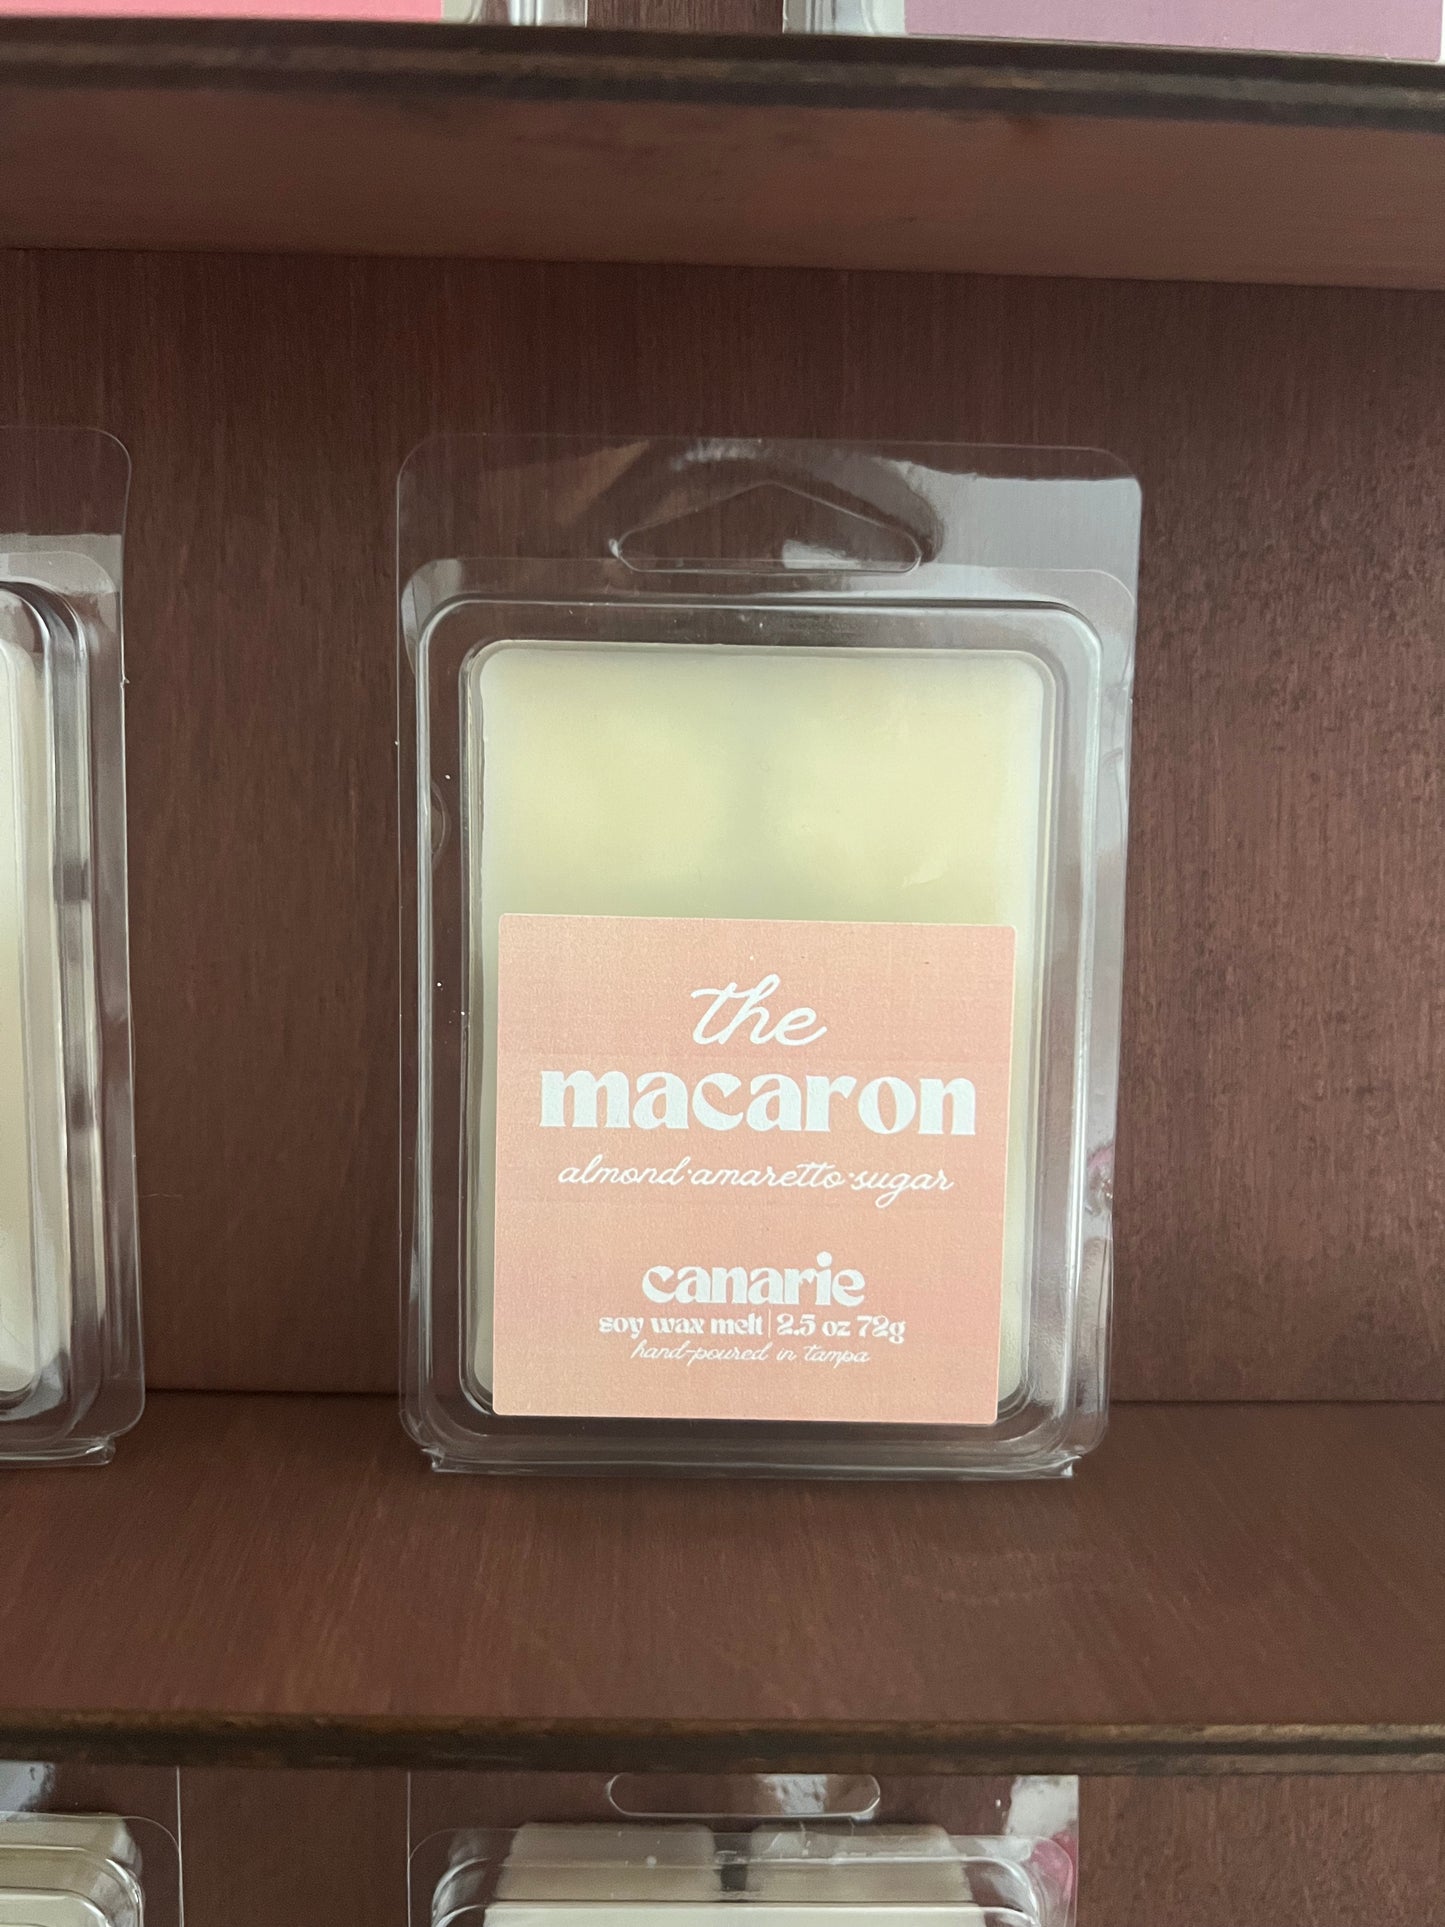 The Macaron